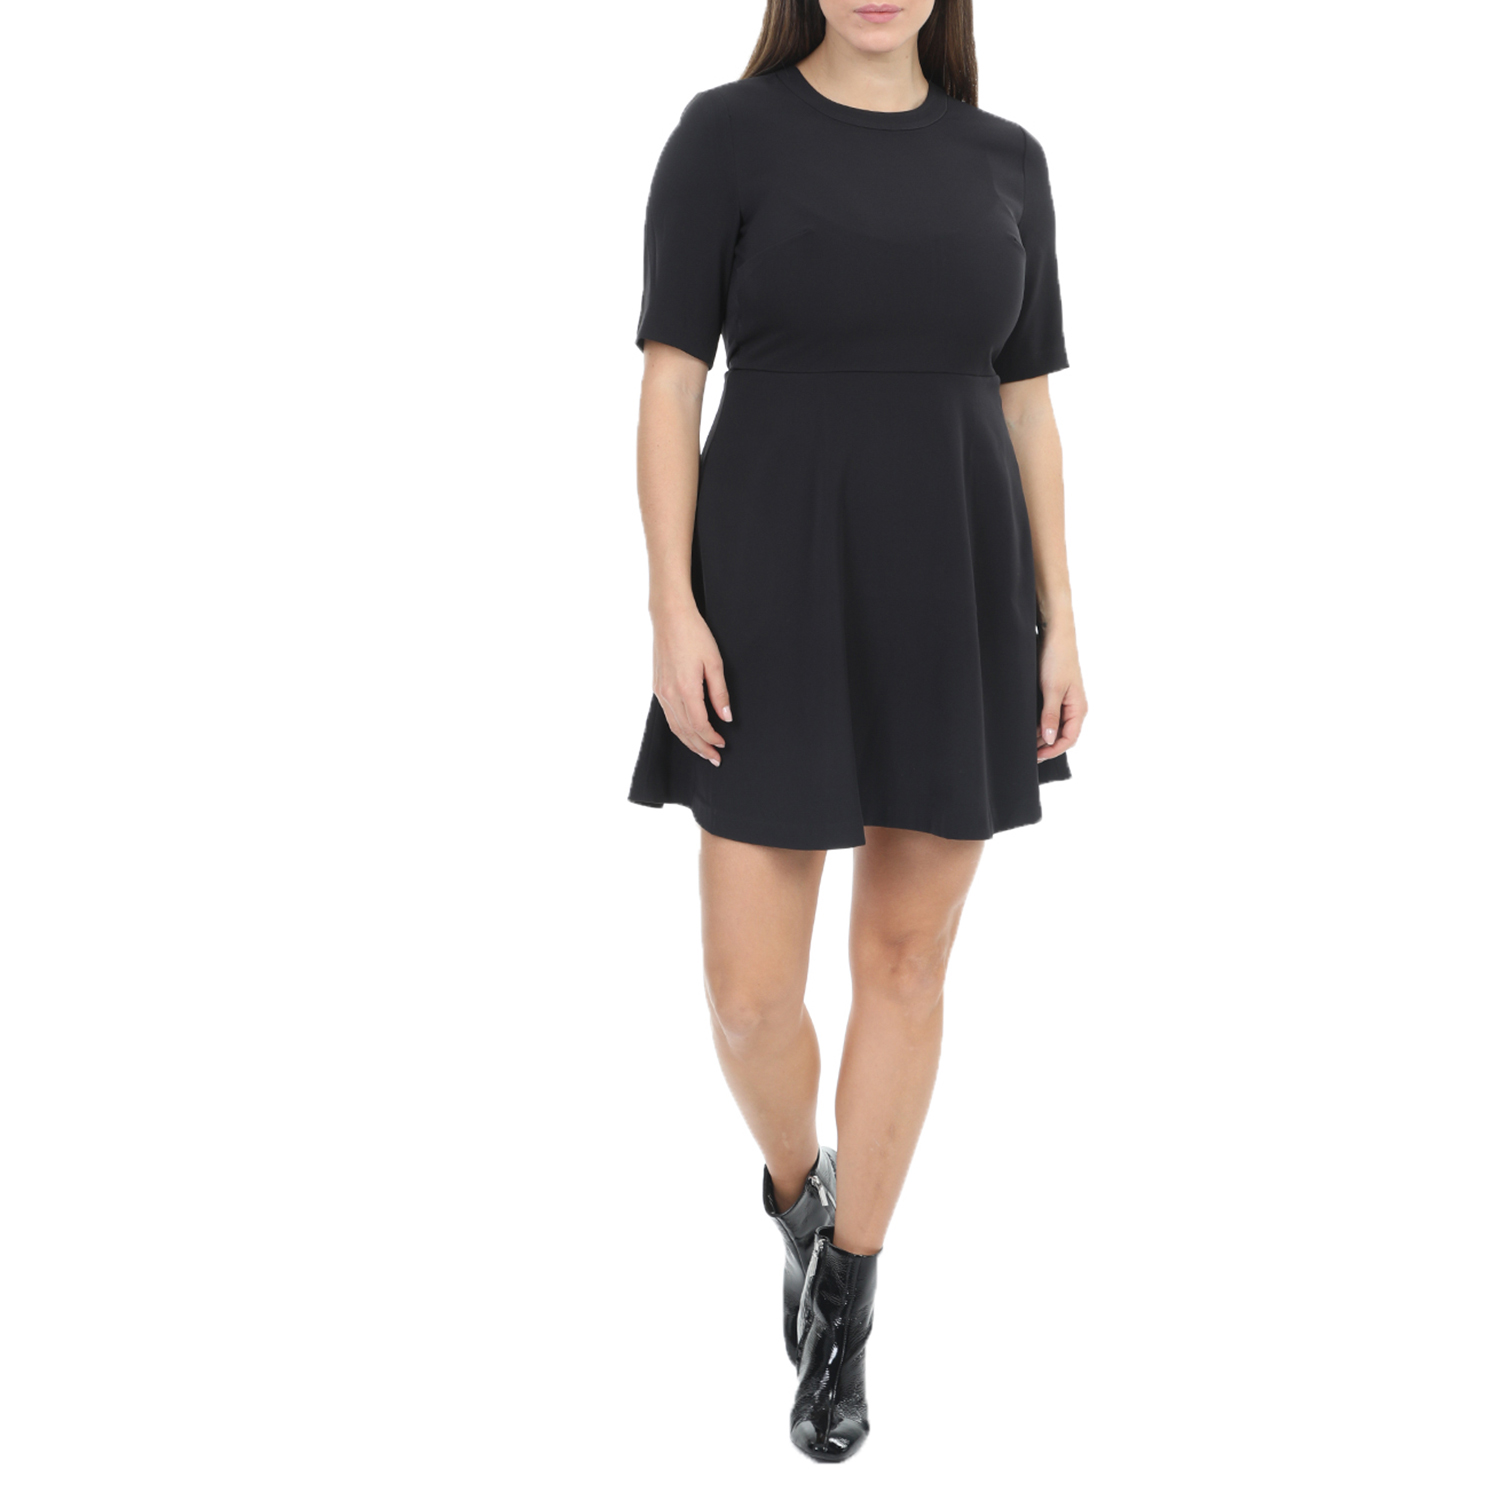 Γυναικεία/Ρούχα/Φορέματα/Μίνι CALVIN KLEIN JEANS - Γυναικείο μίνι φόρεμα CALVIN KLEIN JEANS FLARED SATIN μαύρο